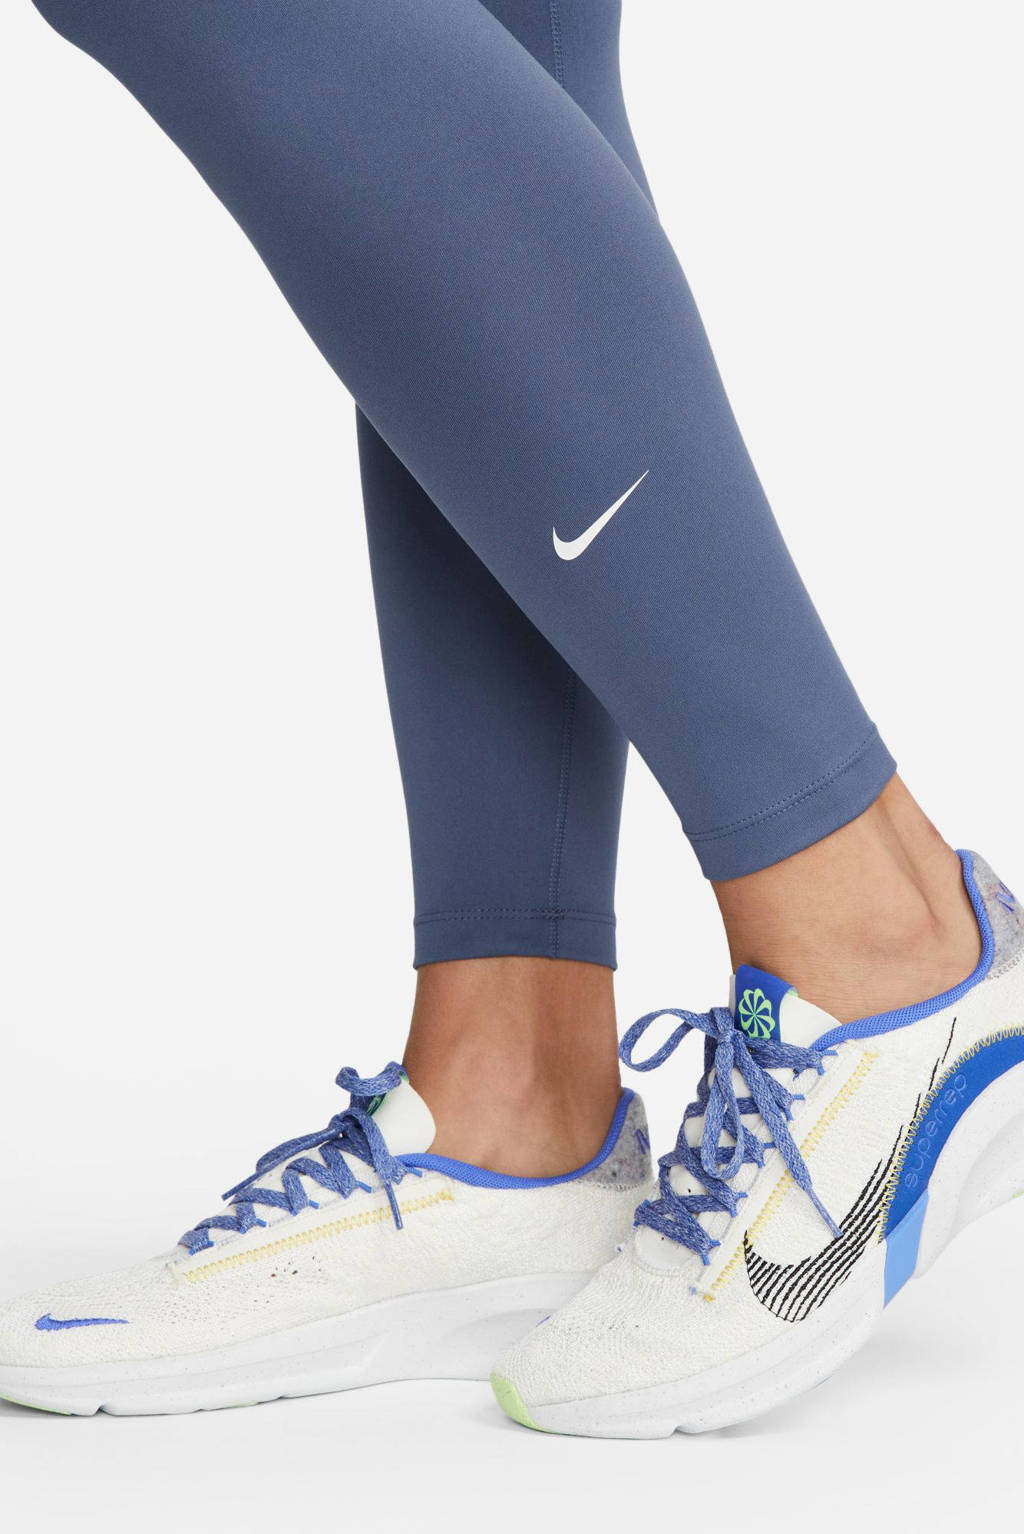 Nike sportlegging blauw kopen?, Morgen in huis